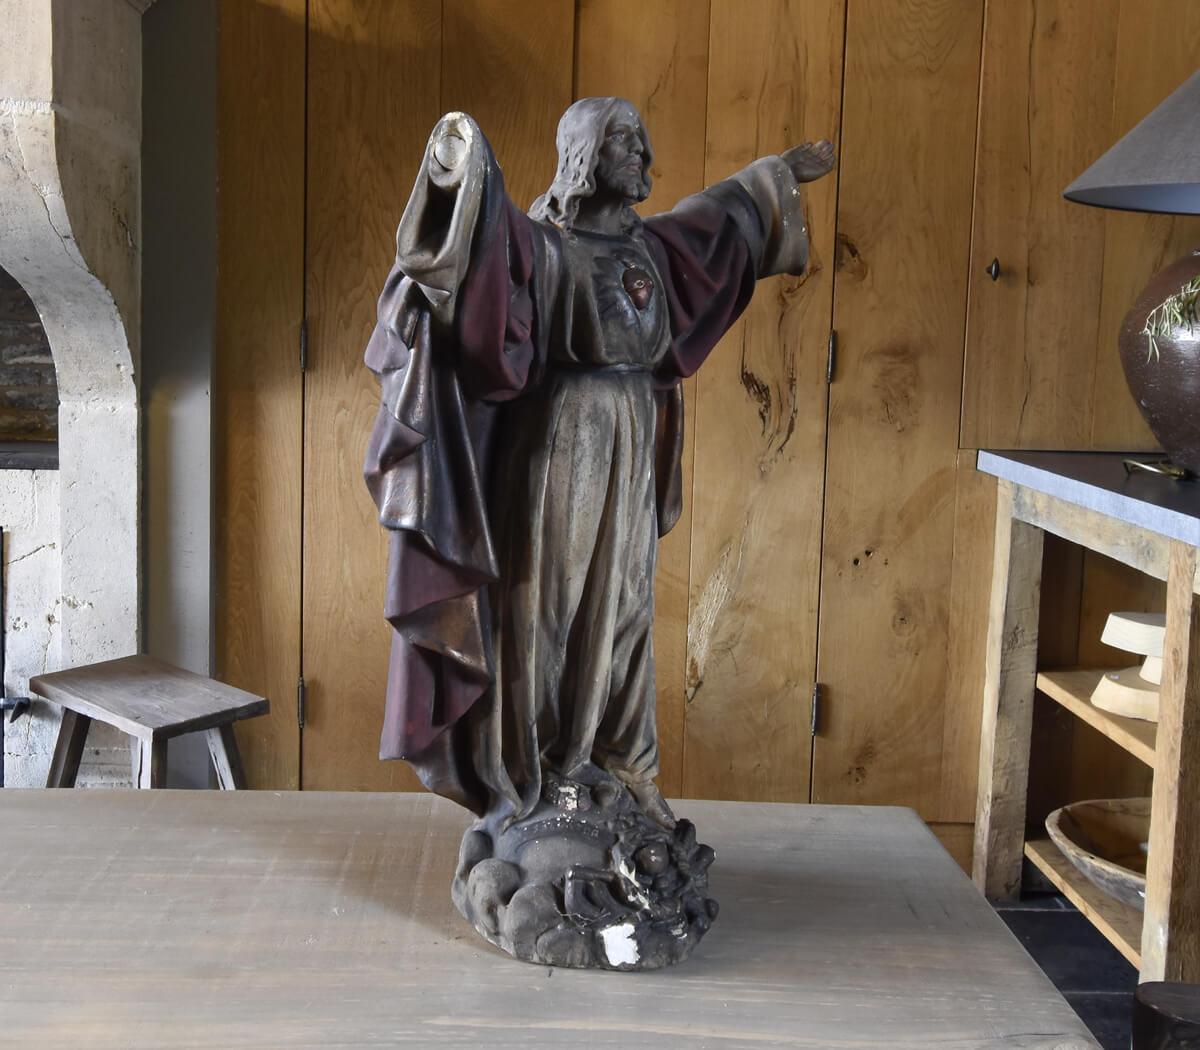 Eine alte Statue von Sacred Heart Jesus Christ,
aus Gips/Zement hergestellt. (Es fehlt eine Hand.)